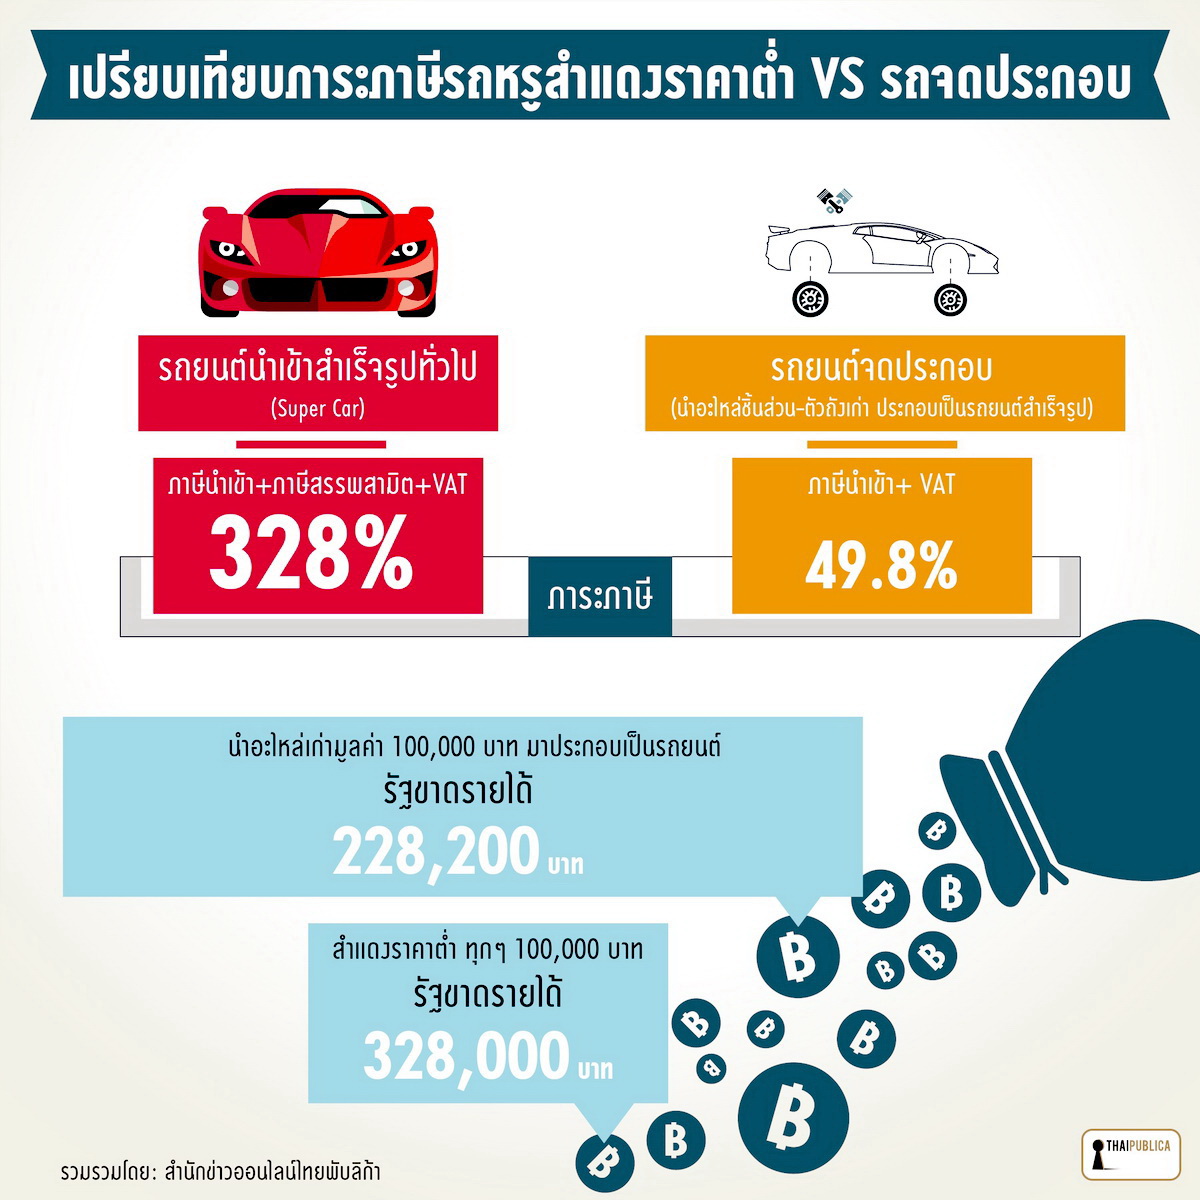 มหากาพย์นำเข้ารถหรู (14): สตง. สอบบิ๊กกรมศุลฯ คืนภาษี “ซูเปอร์คาร์” -  จนท.ศุลกากรมึน “สงสัย” ผู้นำเข้าแจ้งราคาต่ำ ถูกสอบประเมินภาษีโดยมิชอบ -  Thaipublica